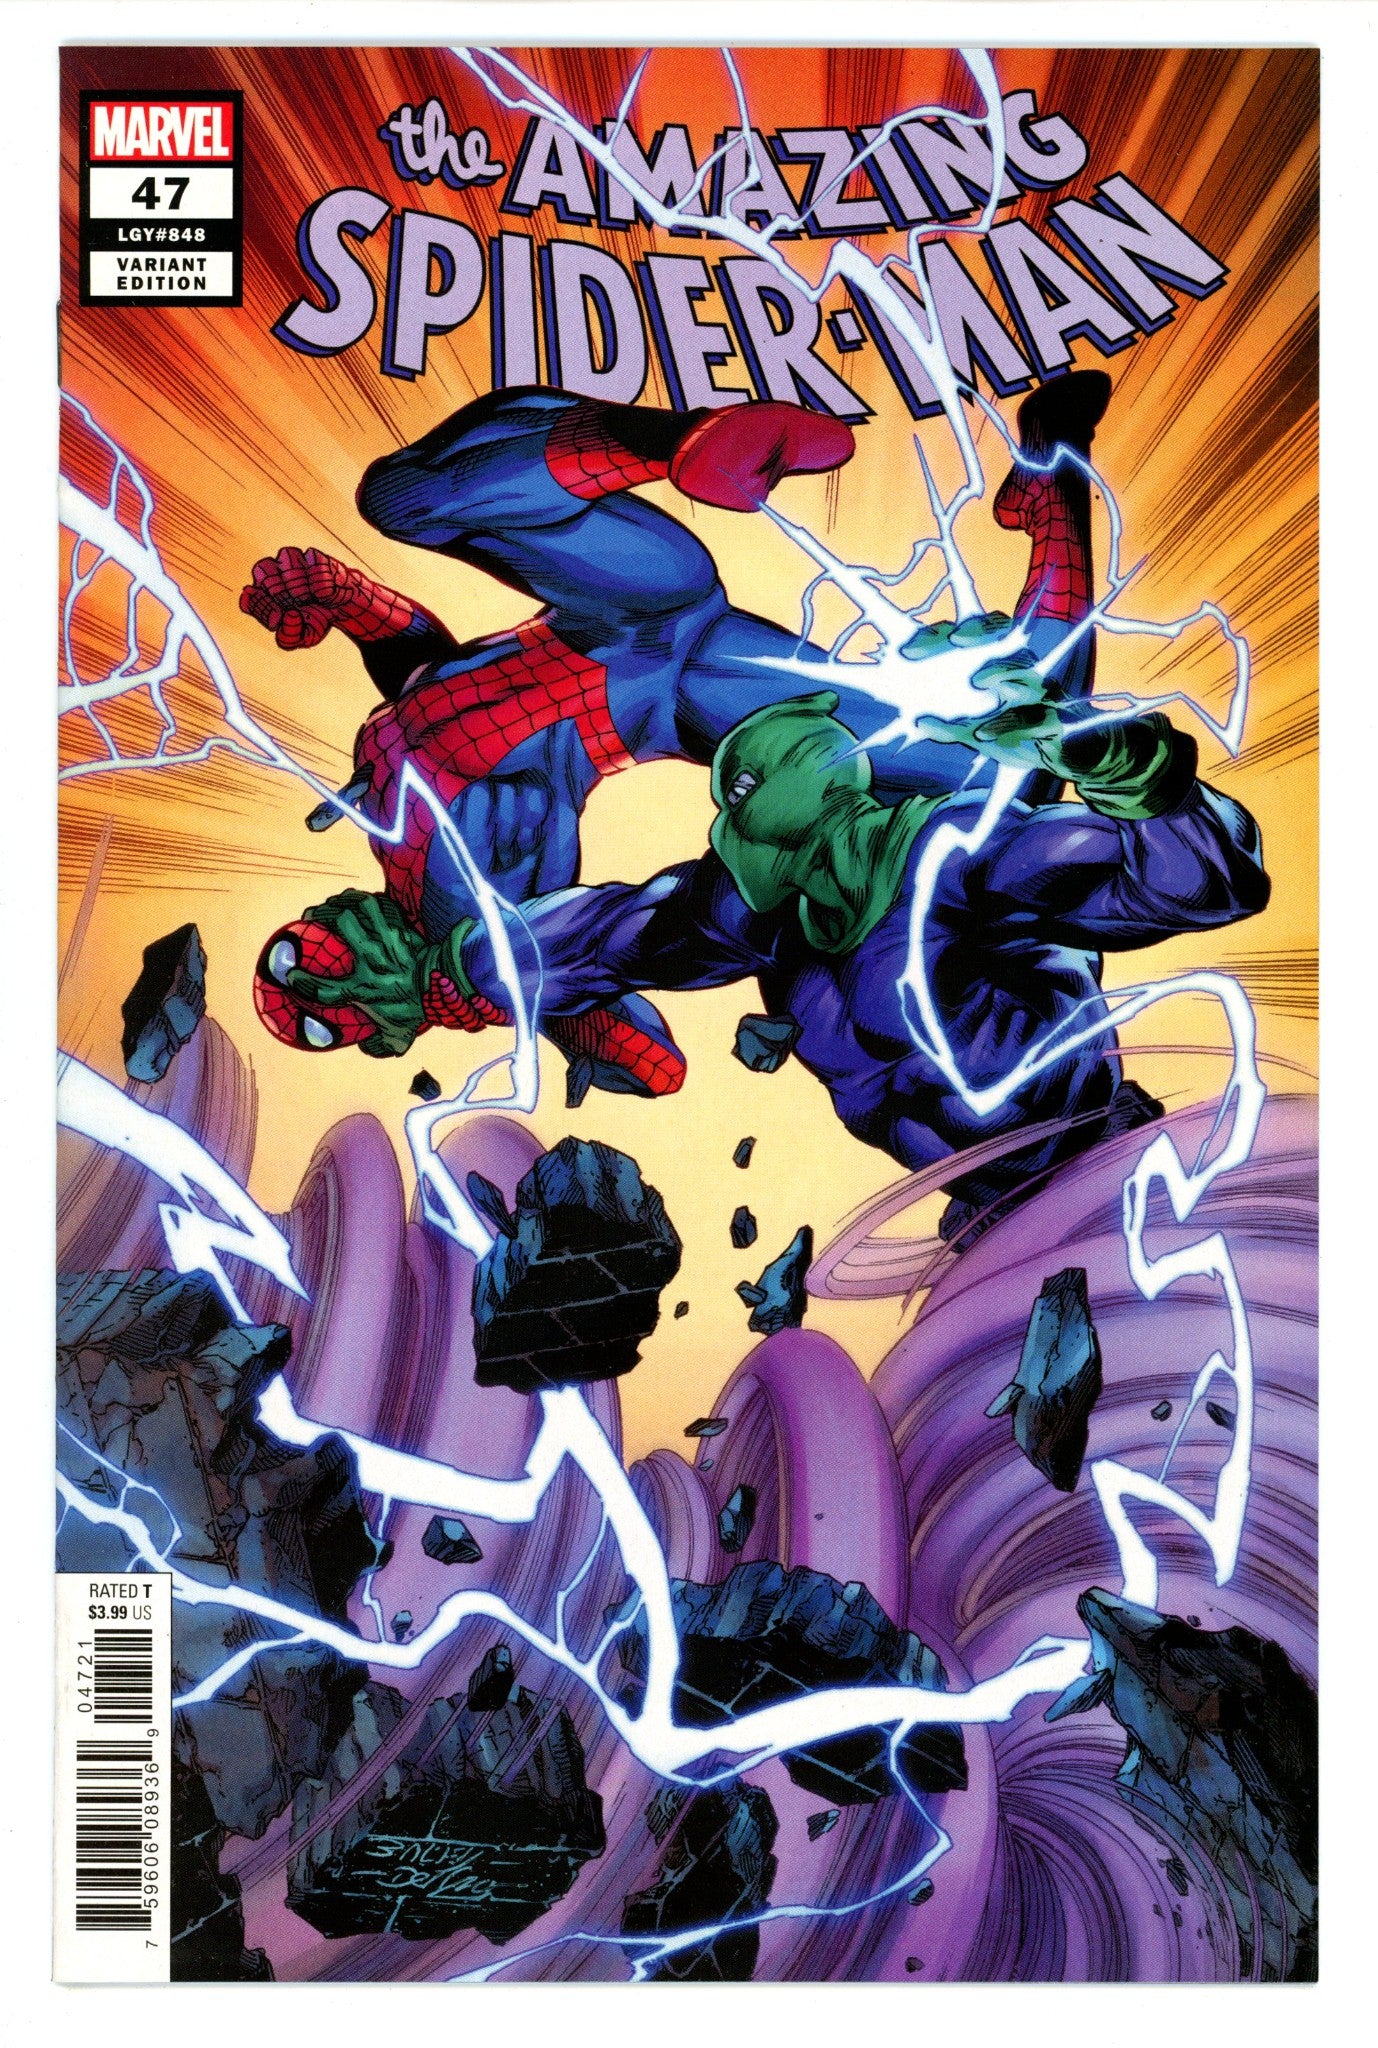 Amazing Spider-Man Vol 5 47 (848)High Grade(2020) BagleyVariant